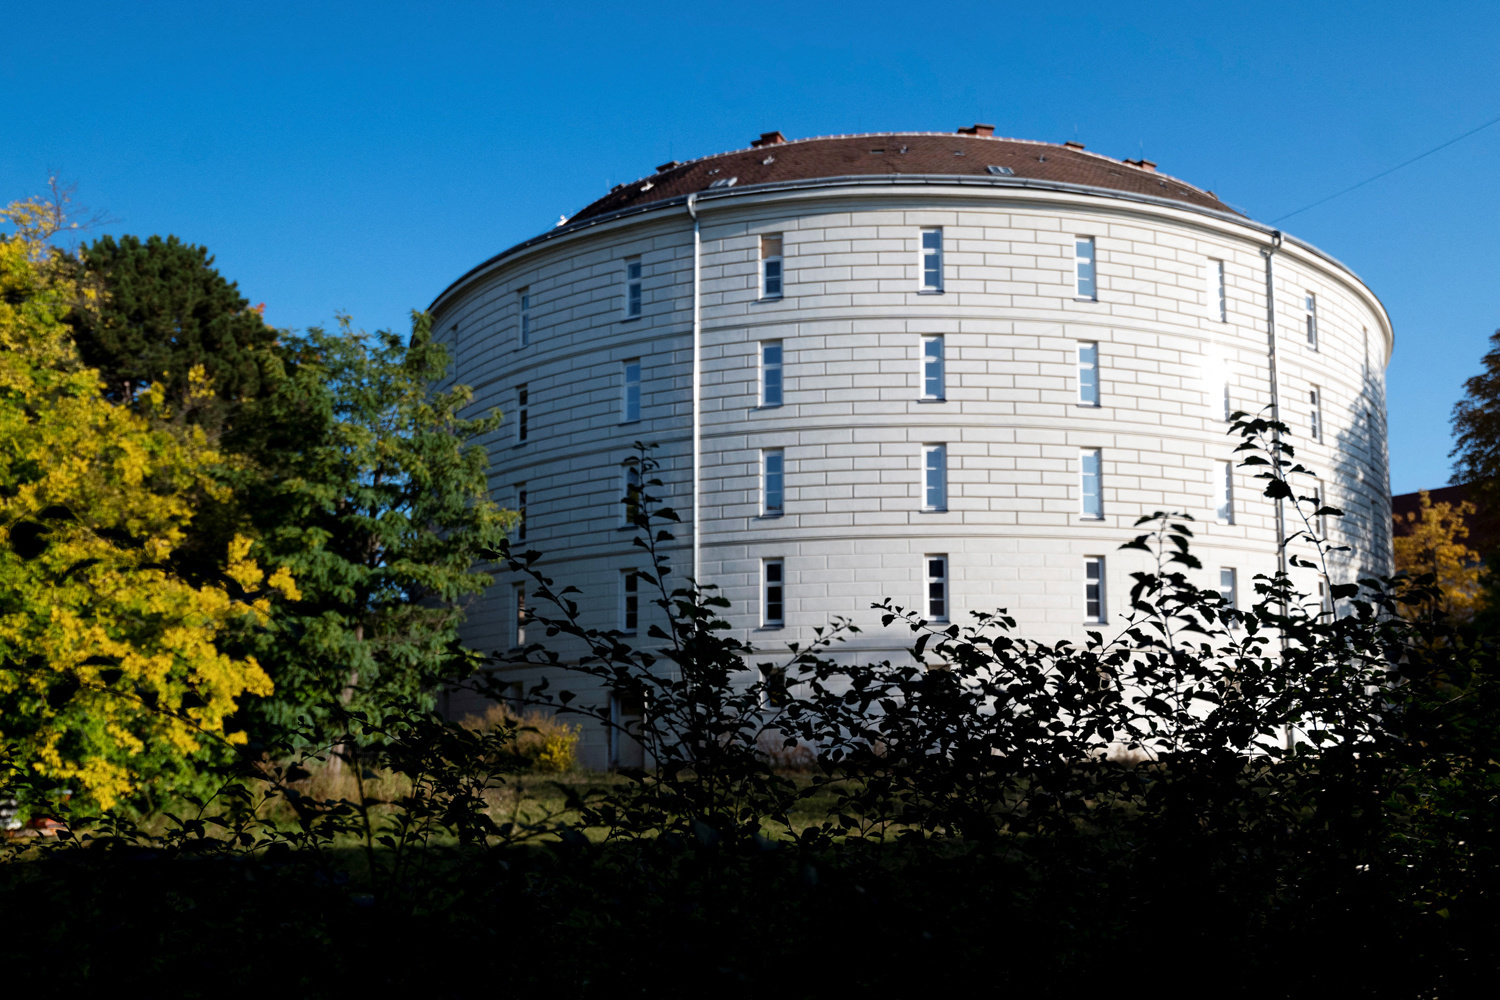 La "Tour des fous" du prestigieux musée de pathologie "Narrenturm" de Vienne est photographiée à Vienne, en Autriche, le 20 octobre 2021., Getty Images